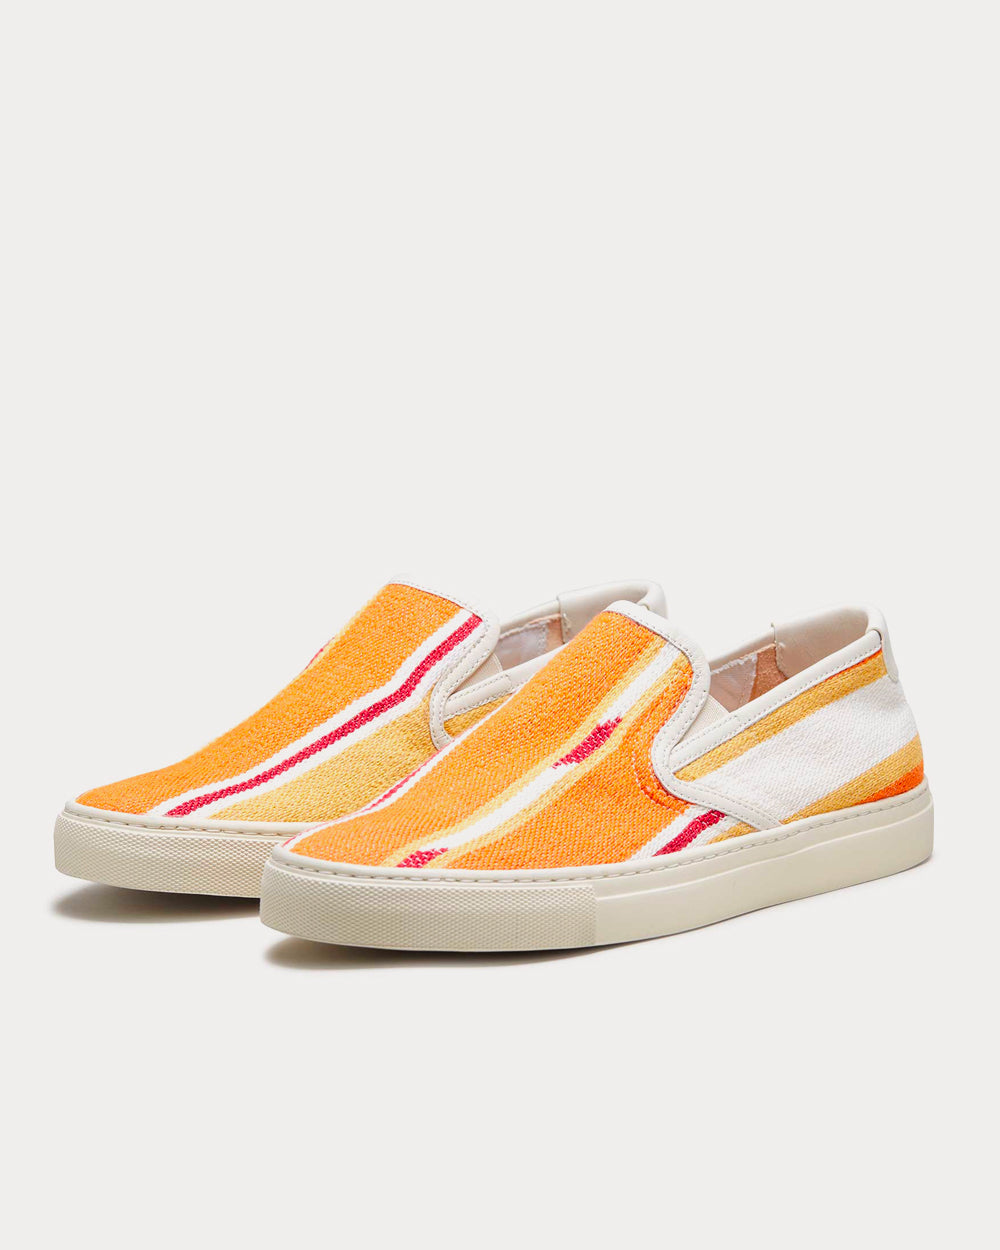 Zespa - Textile Fantaisie Kilim Orange Slip On Sneakers